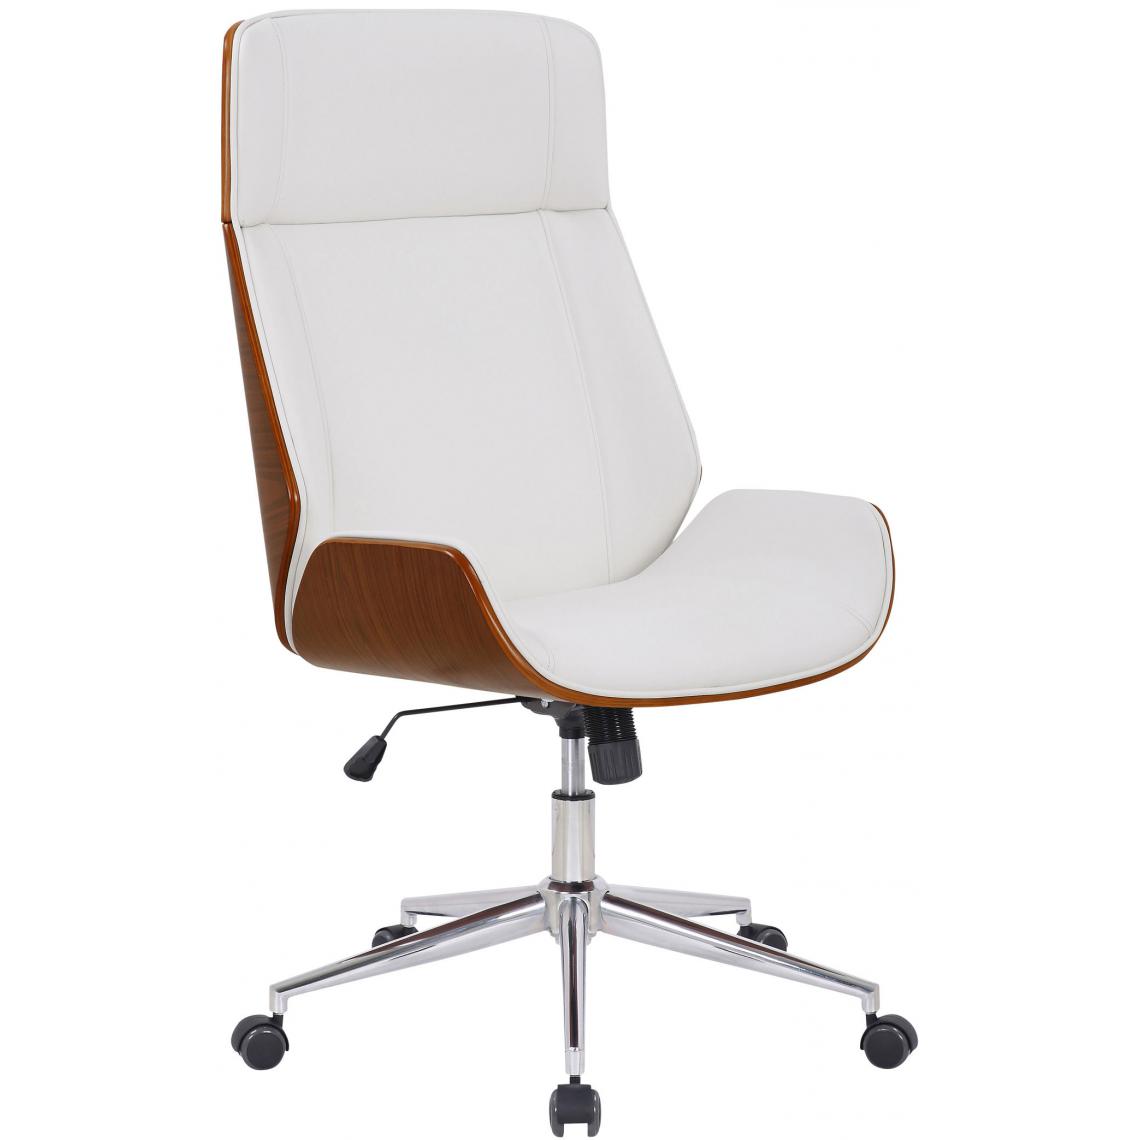 Icaverne - Magnifique Chaise de bureau edition Tachkent cuir synthétique couleur noyer / blanc - Chaises